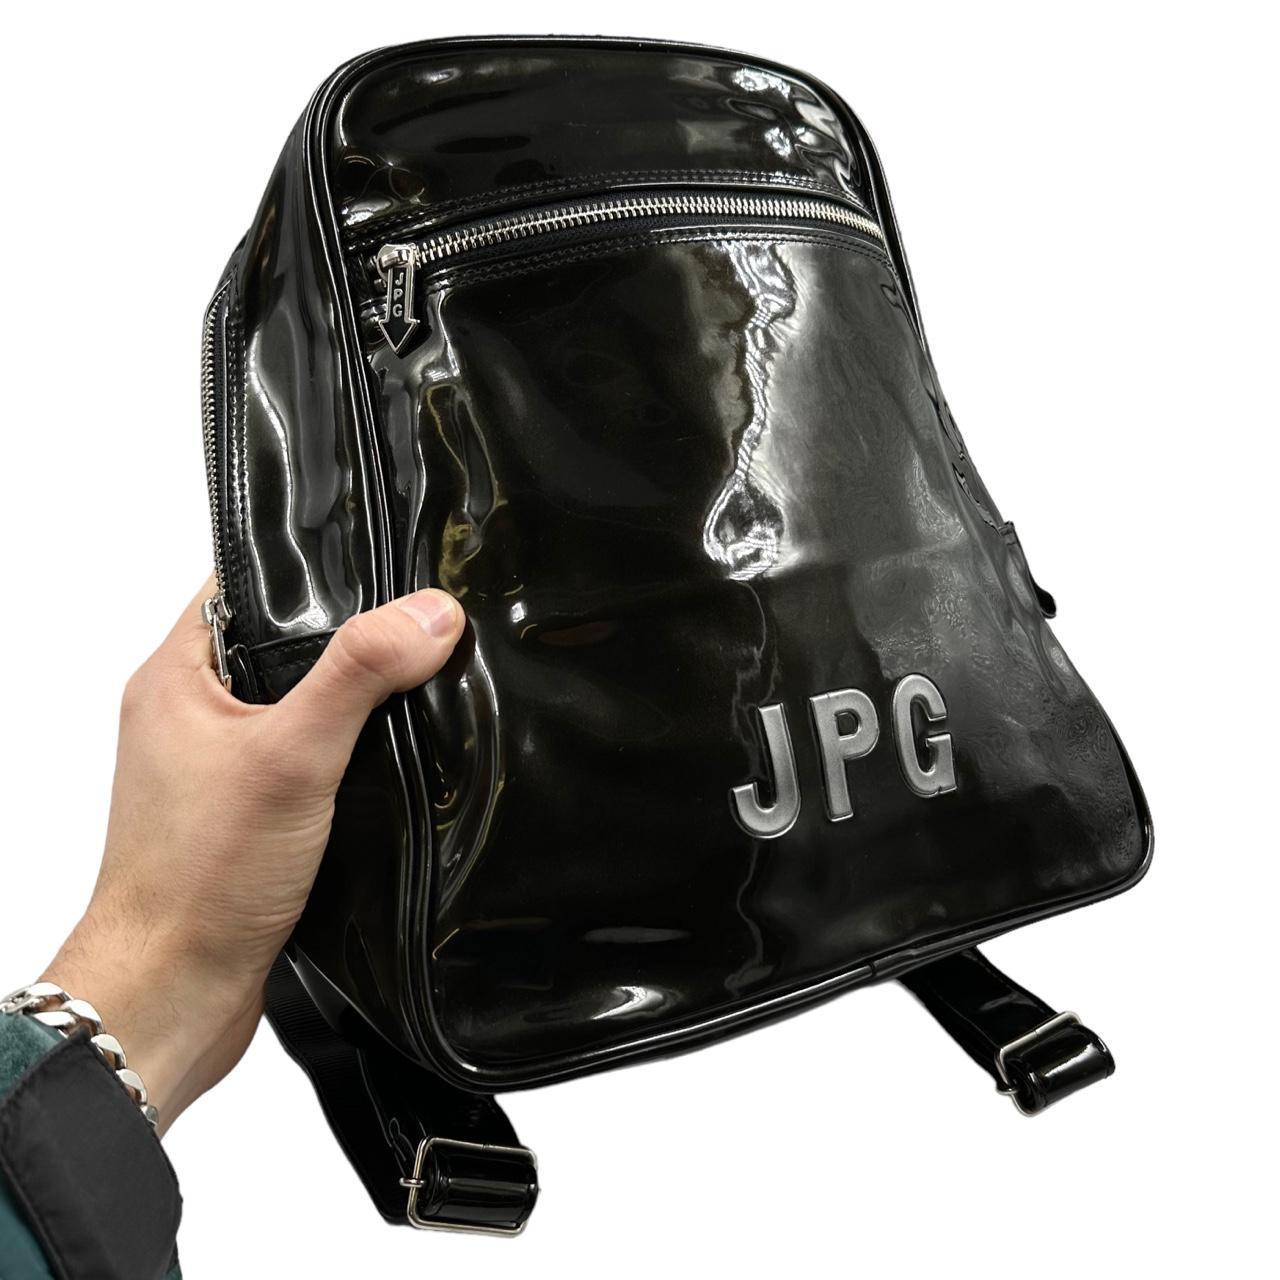 Vintage JPG Jean Paul Gaultier Backpack - Known Source